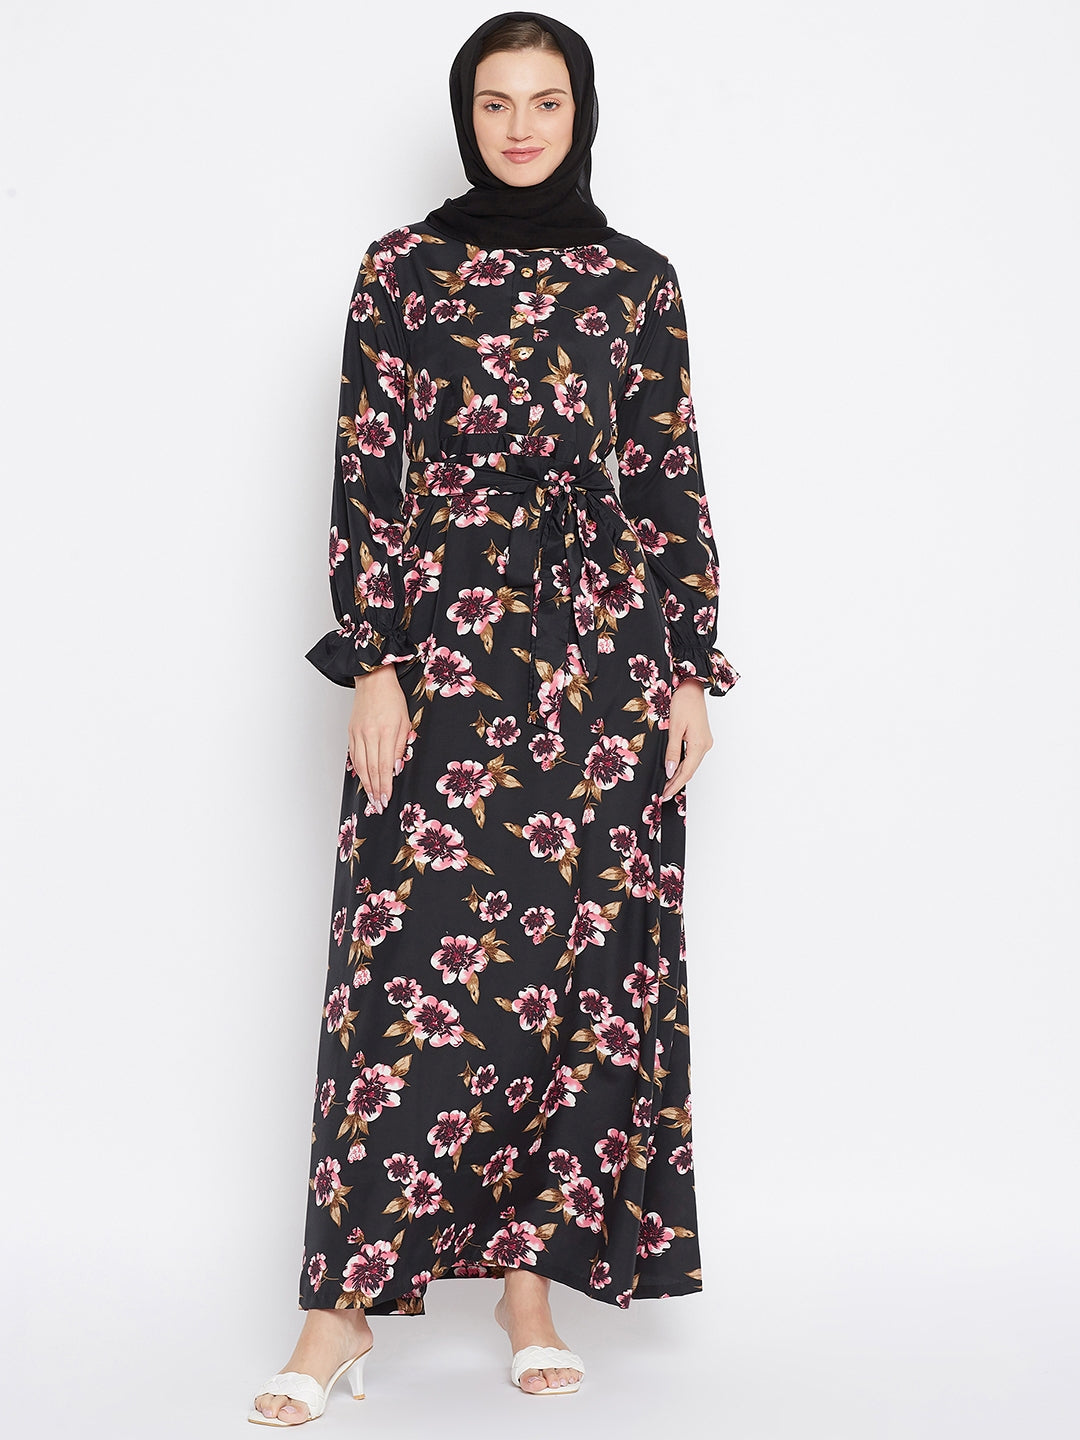 Black Floral Printed Crepe Abaya Dress with Black Georgette Hijab